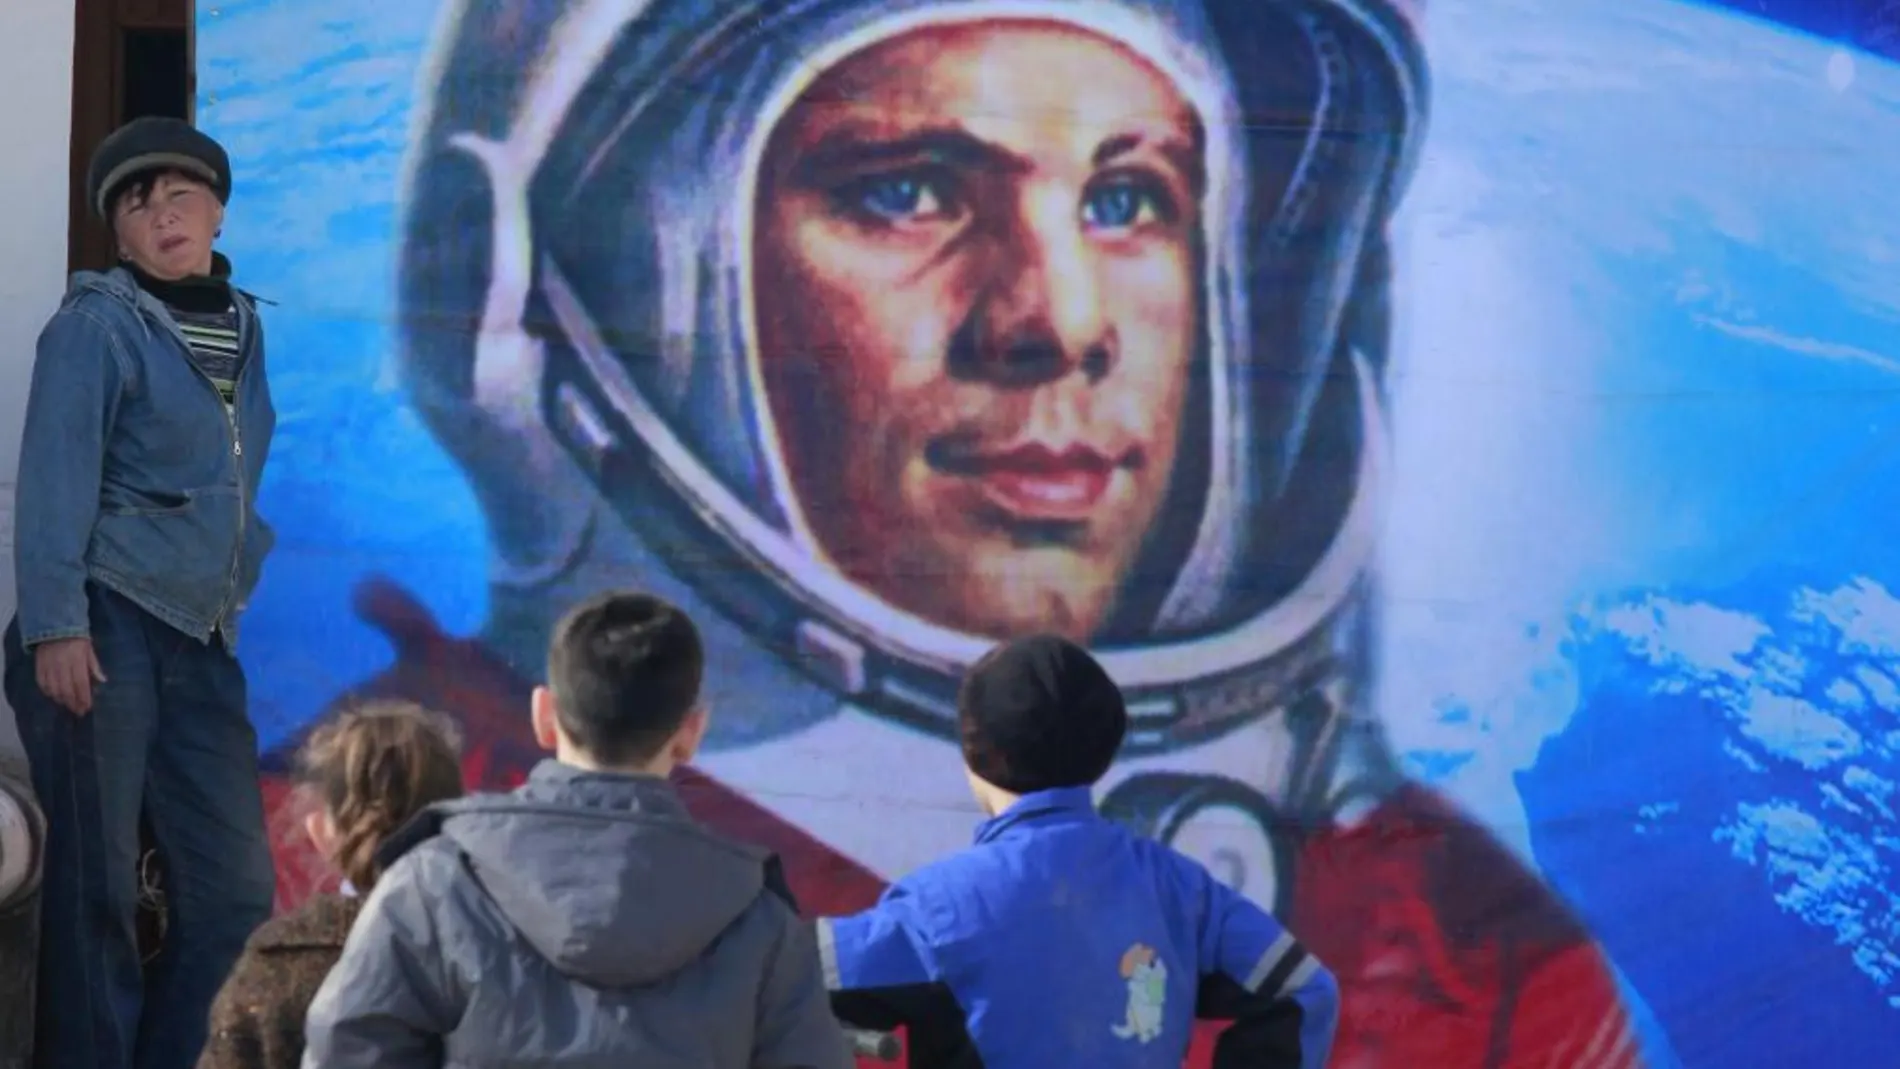 Cartel homenaje a Yuri Gagarin, el primer cosmonauta, en el cosmódromo de Baikonur.